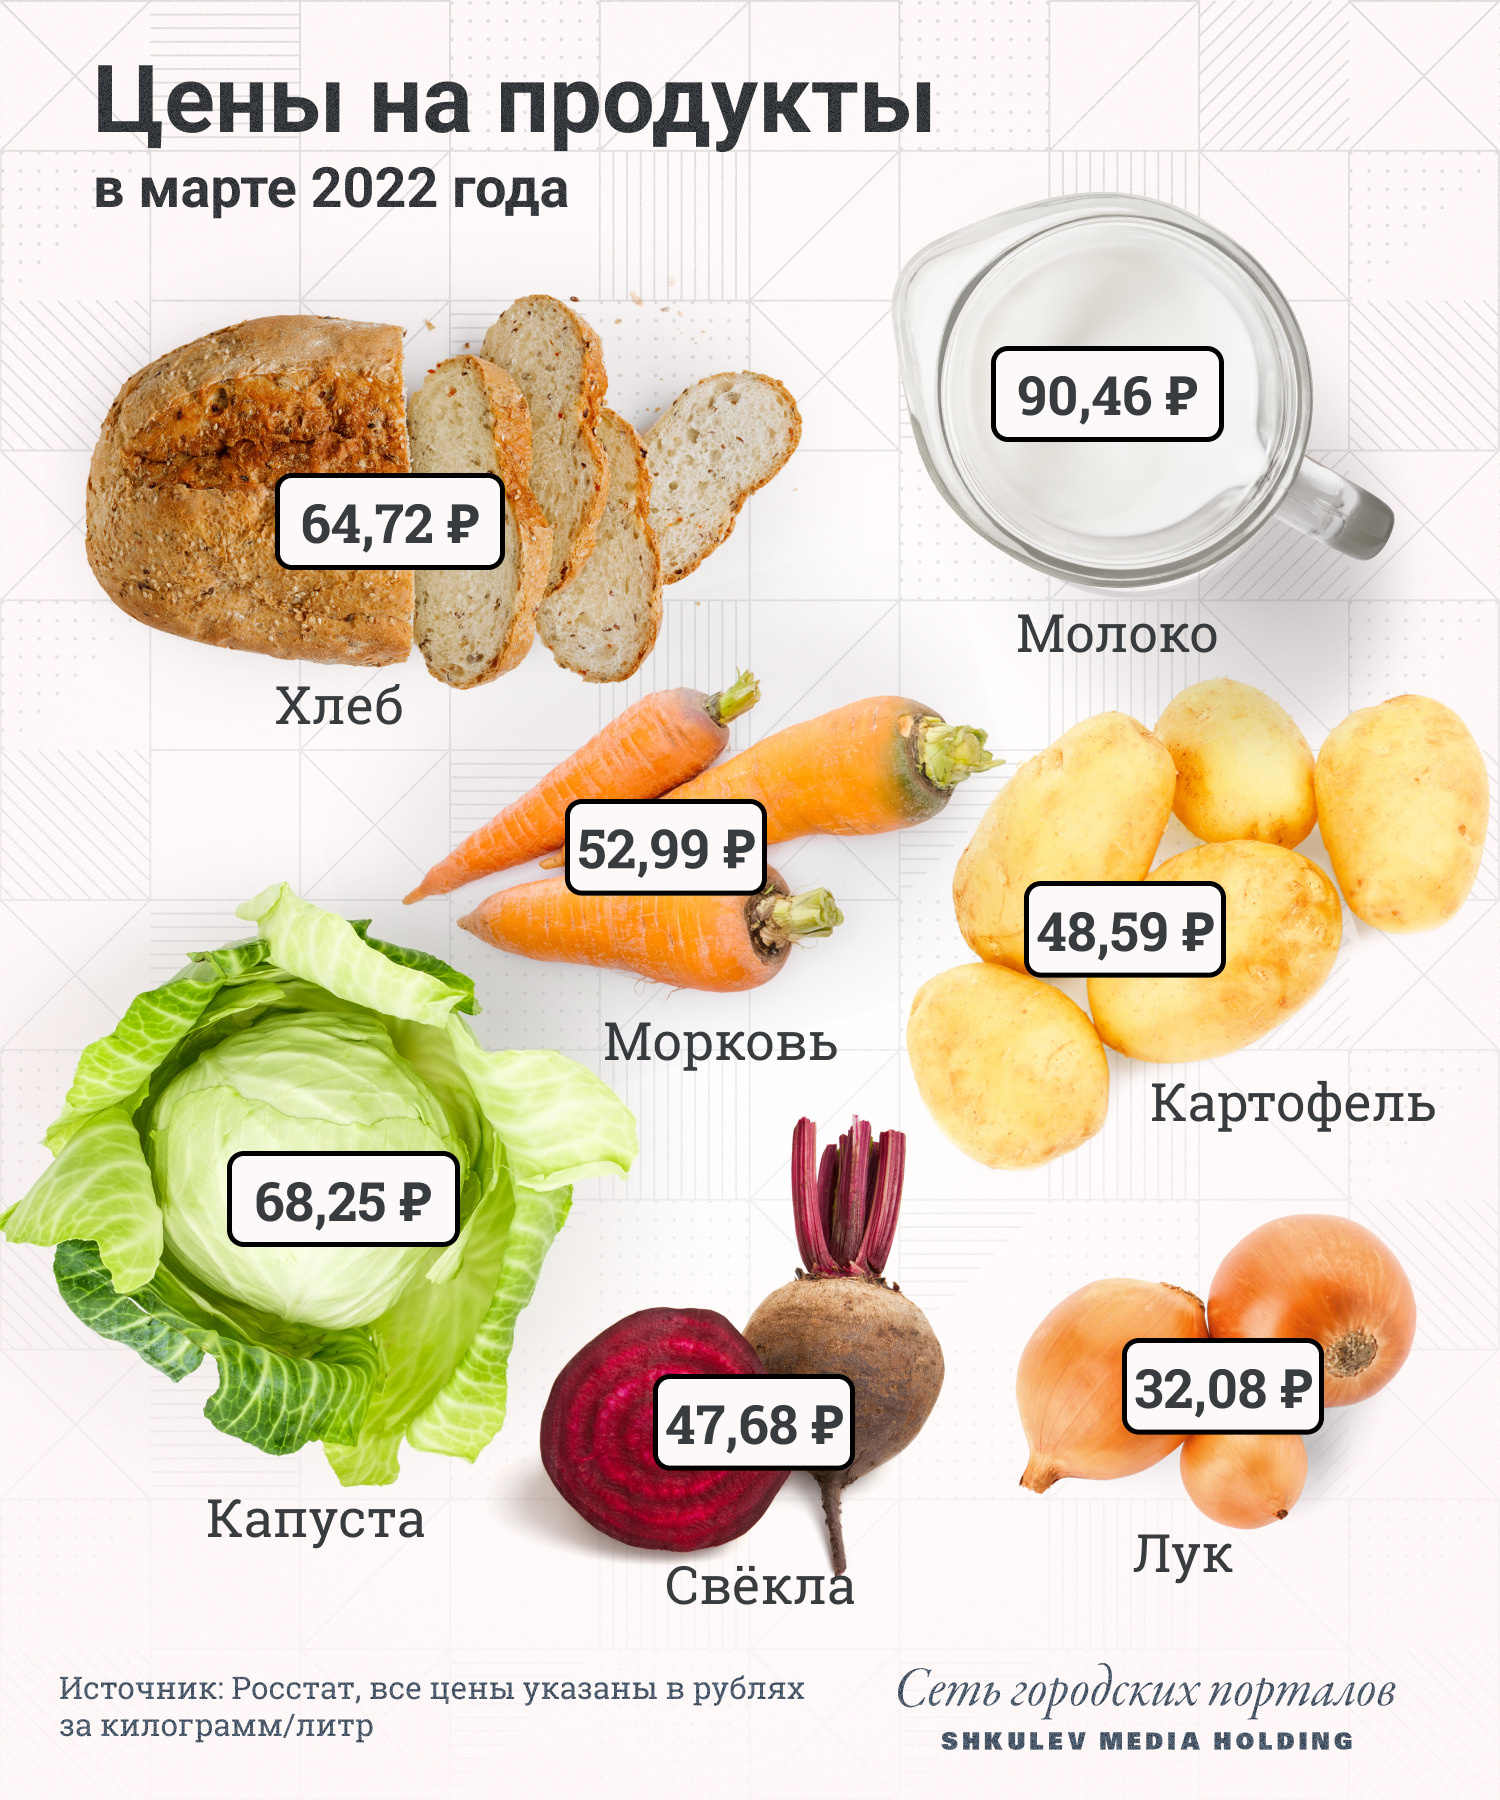 Ожидается, что цены на овощи в скором времени начнут расти